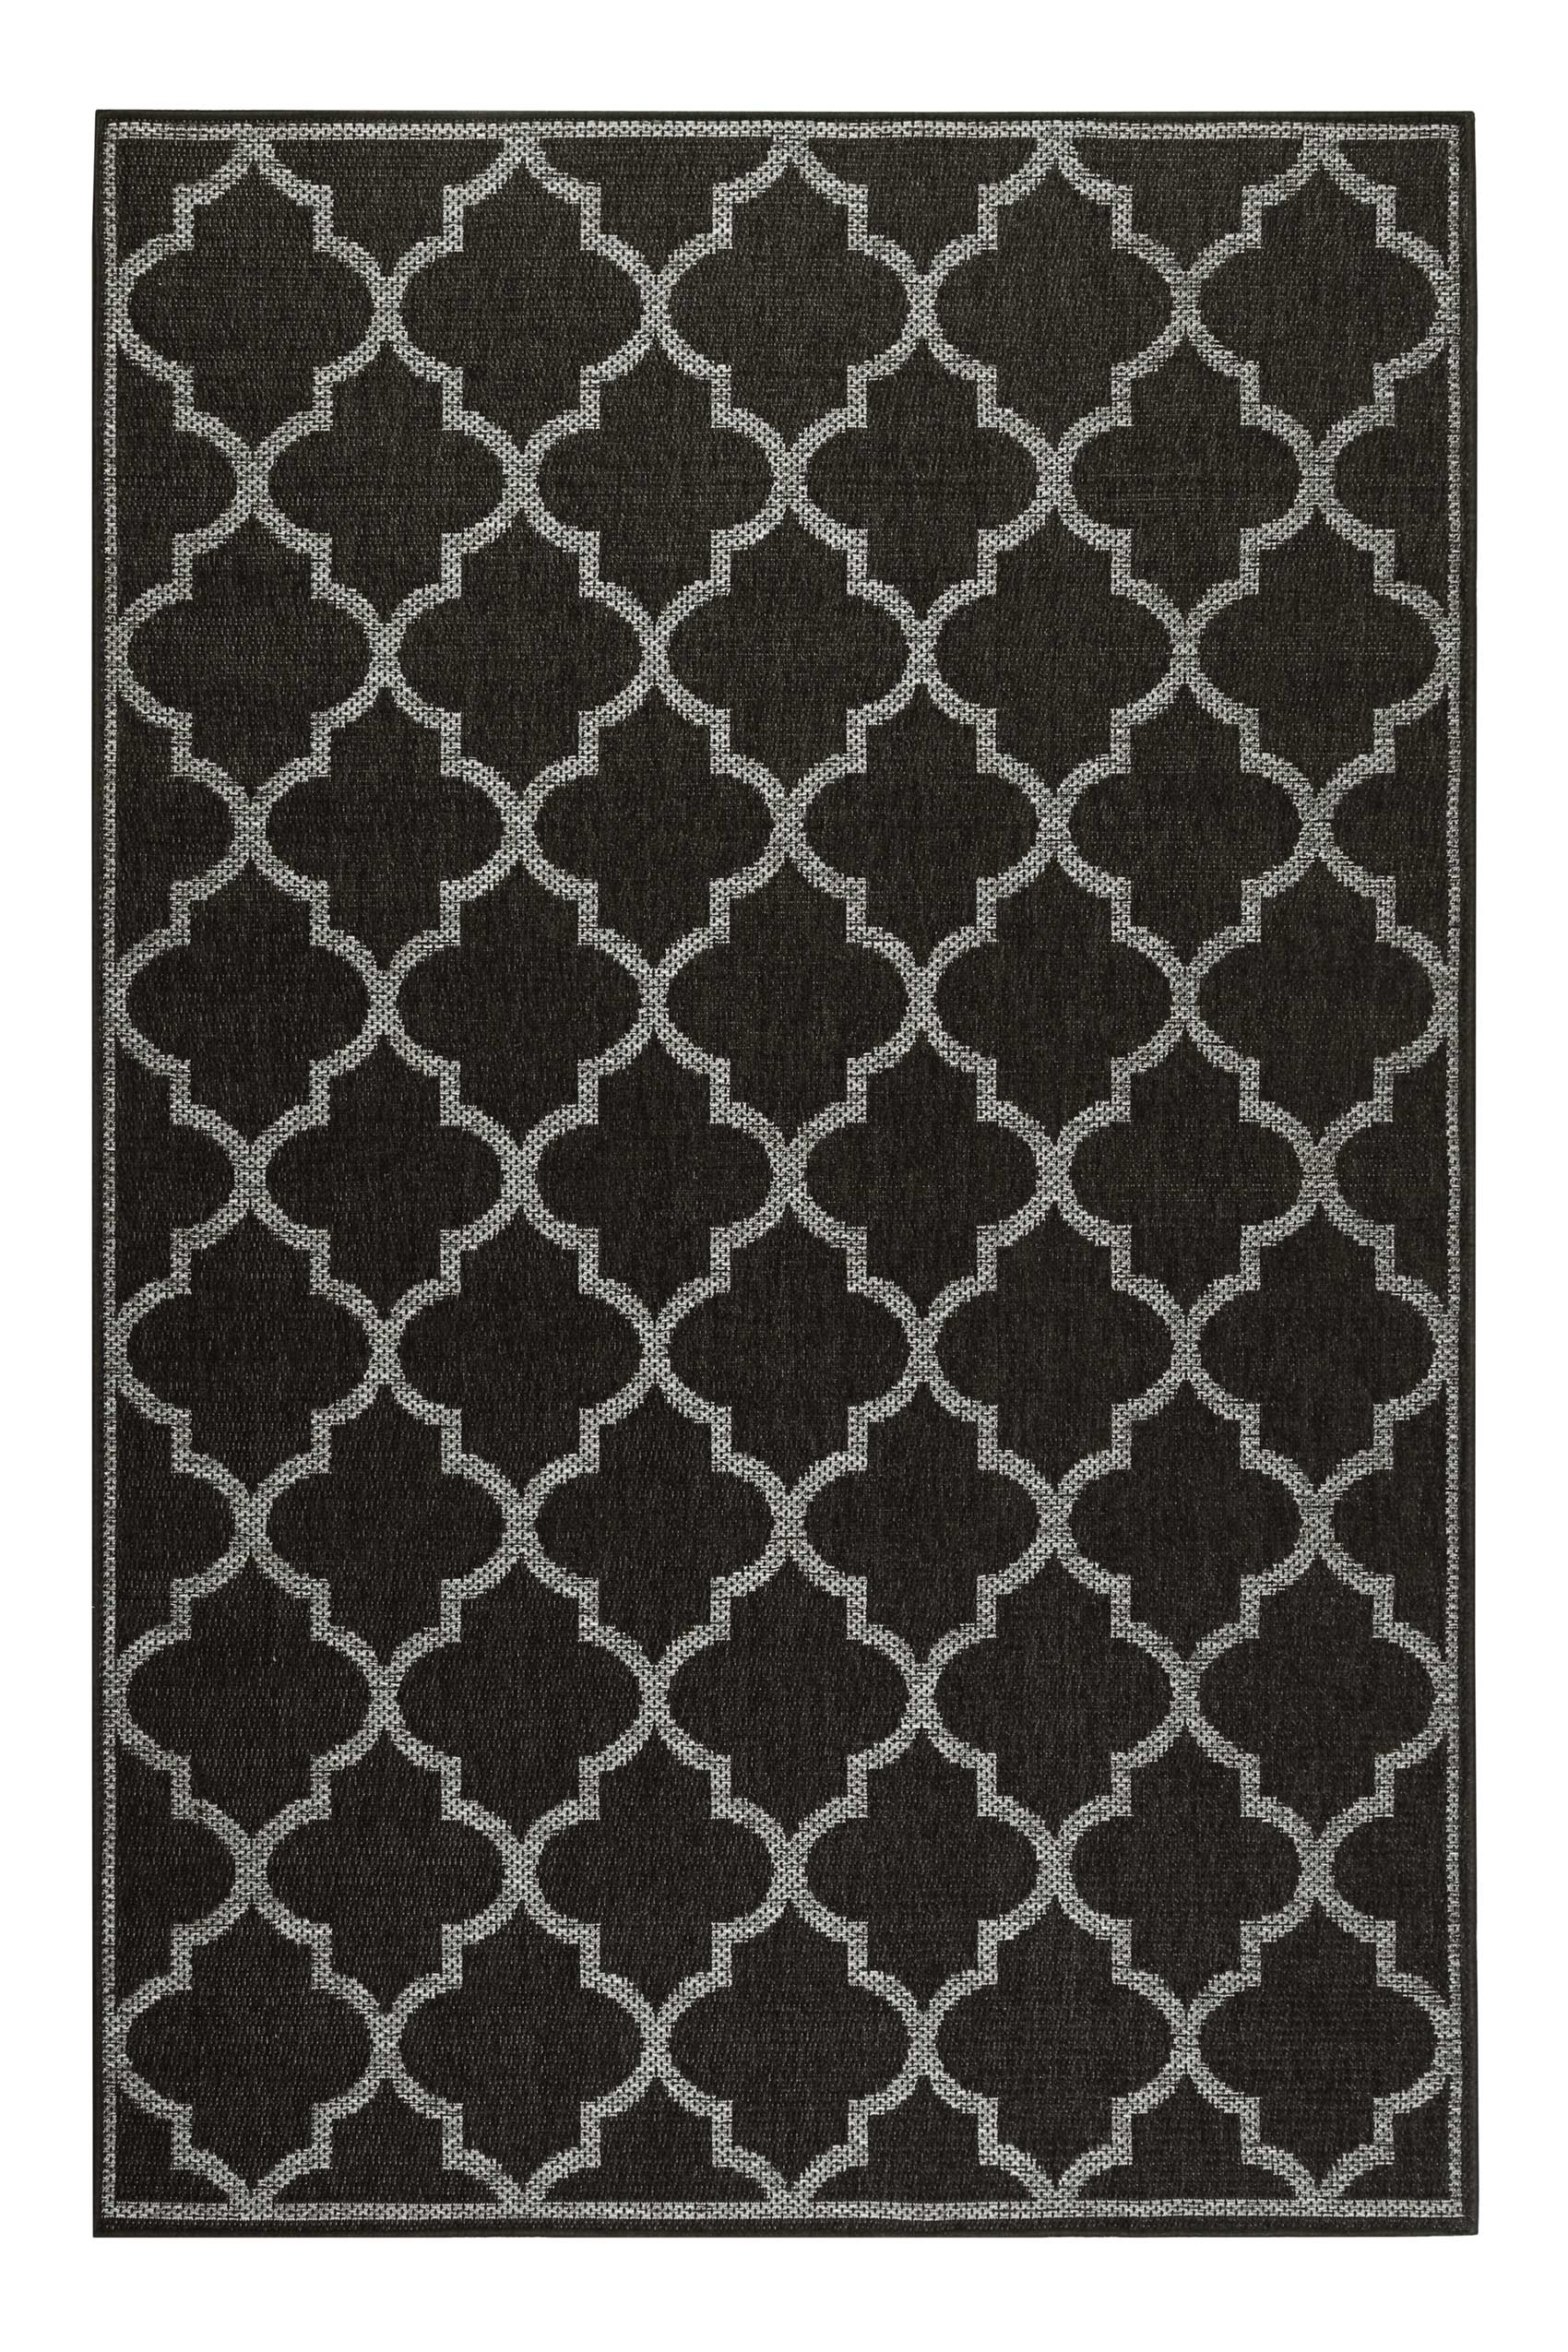 Tapis exterieur noir motif oriental gris 290x200